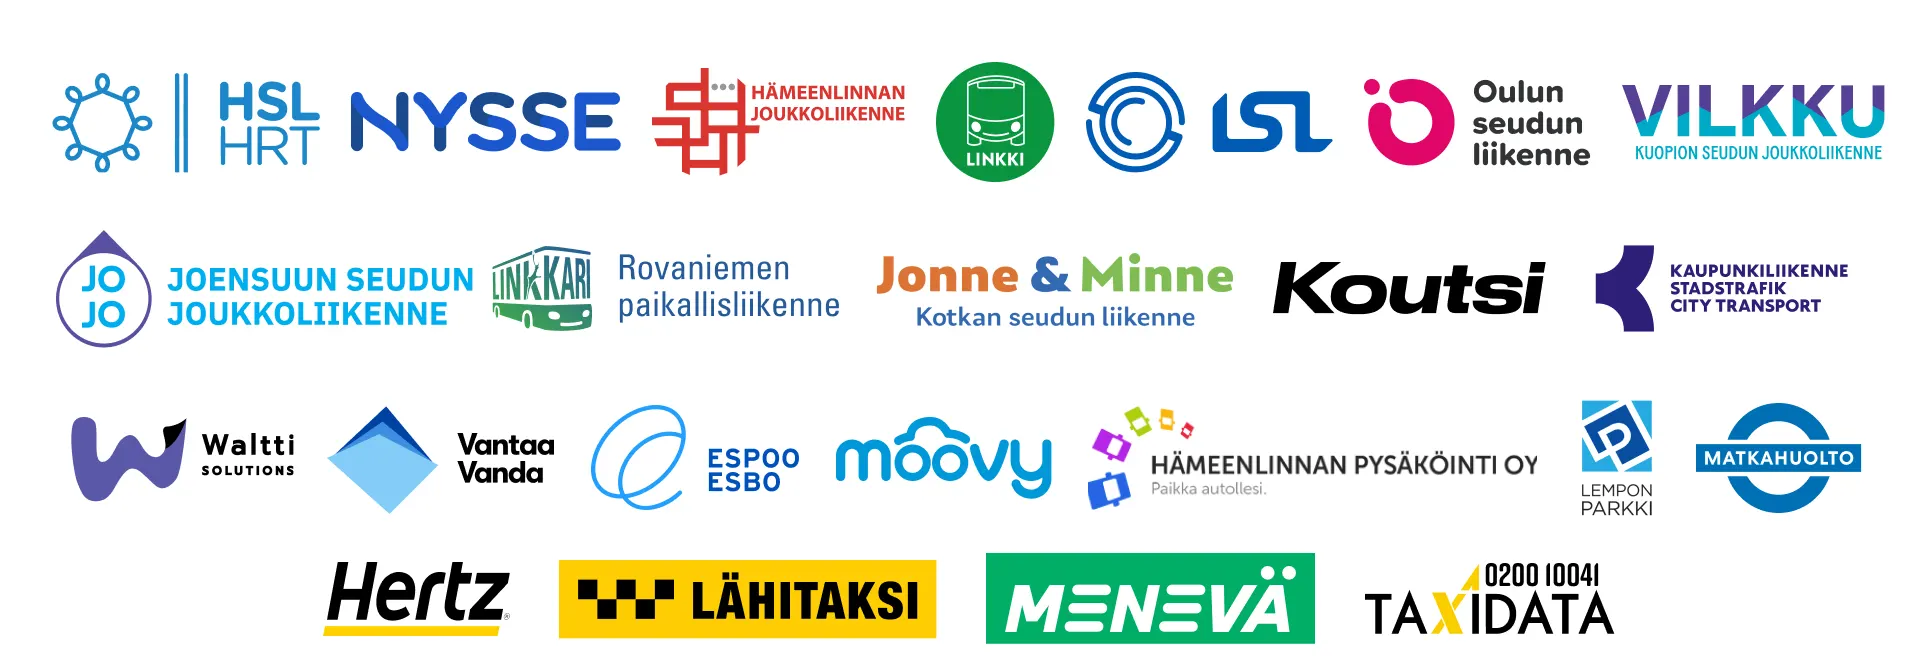 Logoja: HSL, Nysse, Hämeenlinna, Linkki, LSL, OSL, Vilkku, JOJO, Linkkari, Jonne&Minne, Koutsi, Kaupunkiliikenne, Waltti, Vantaa, Espoo, Moovy, Hämeenlinnan pysäköinti, Lempon Parkki, Matkahuolto, Hertz, Lähitaksi, Menevä, Taxidata